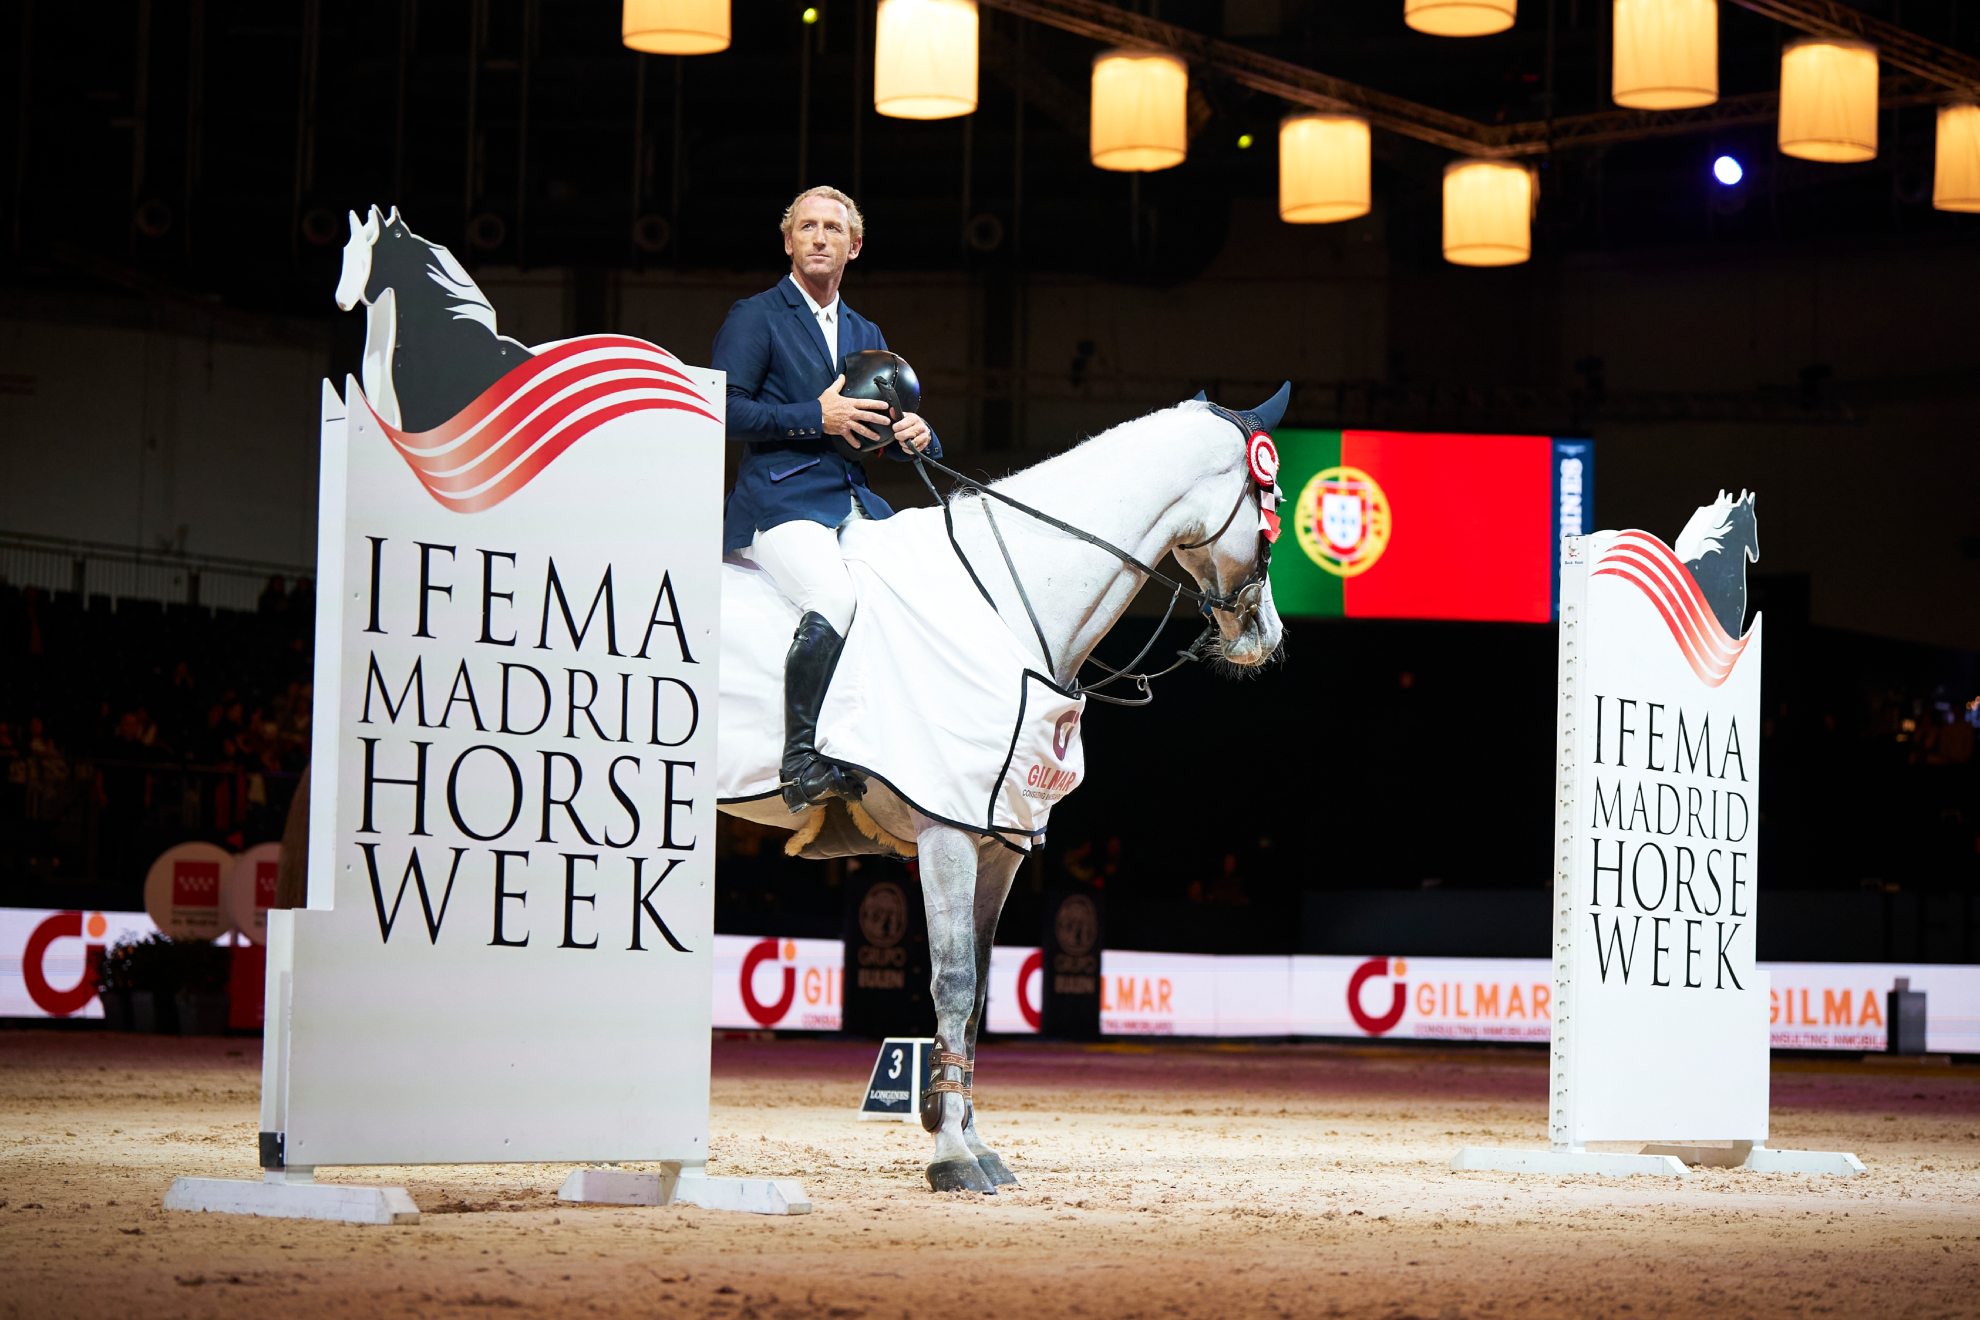 Una imagen de la última edición de IFEMA Madrid Horse Week